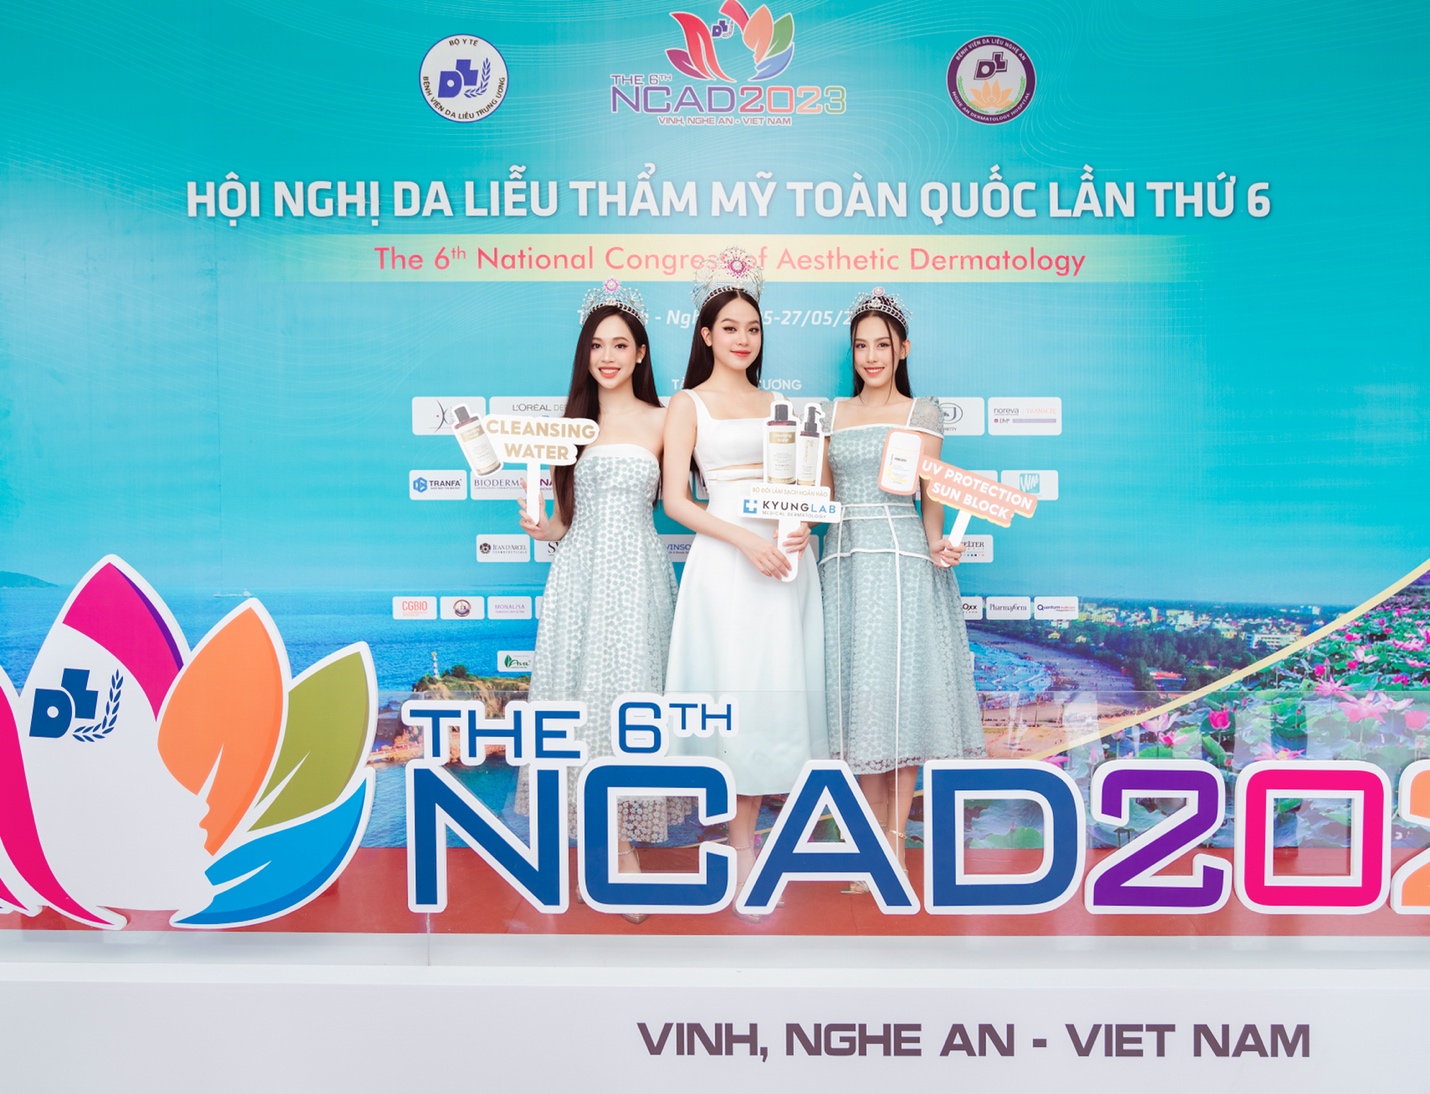 Top 3 Hoa hậu Việt Nam 2022 rạng rỡ tại gian hàng trưng bày KyungLab - Ảnh 1.